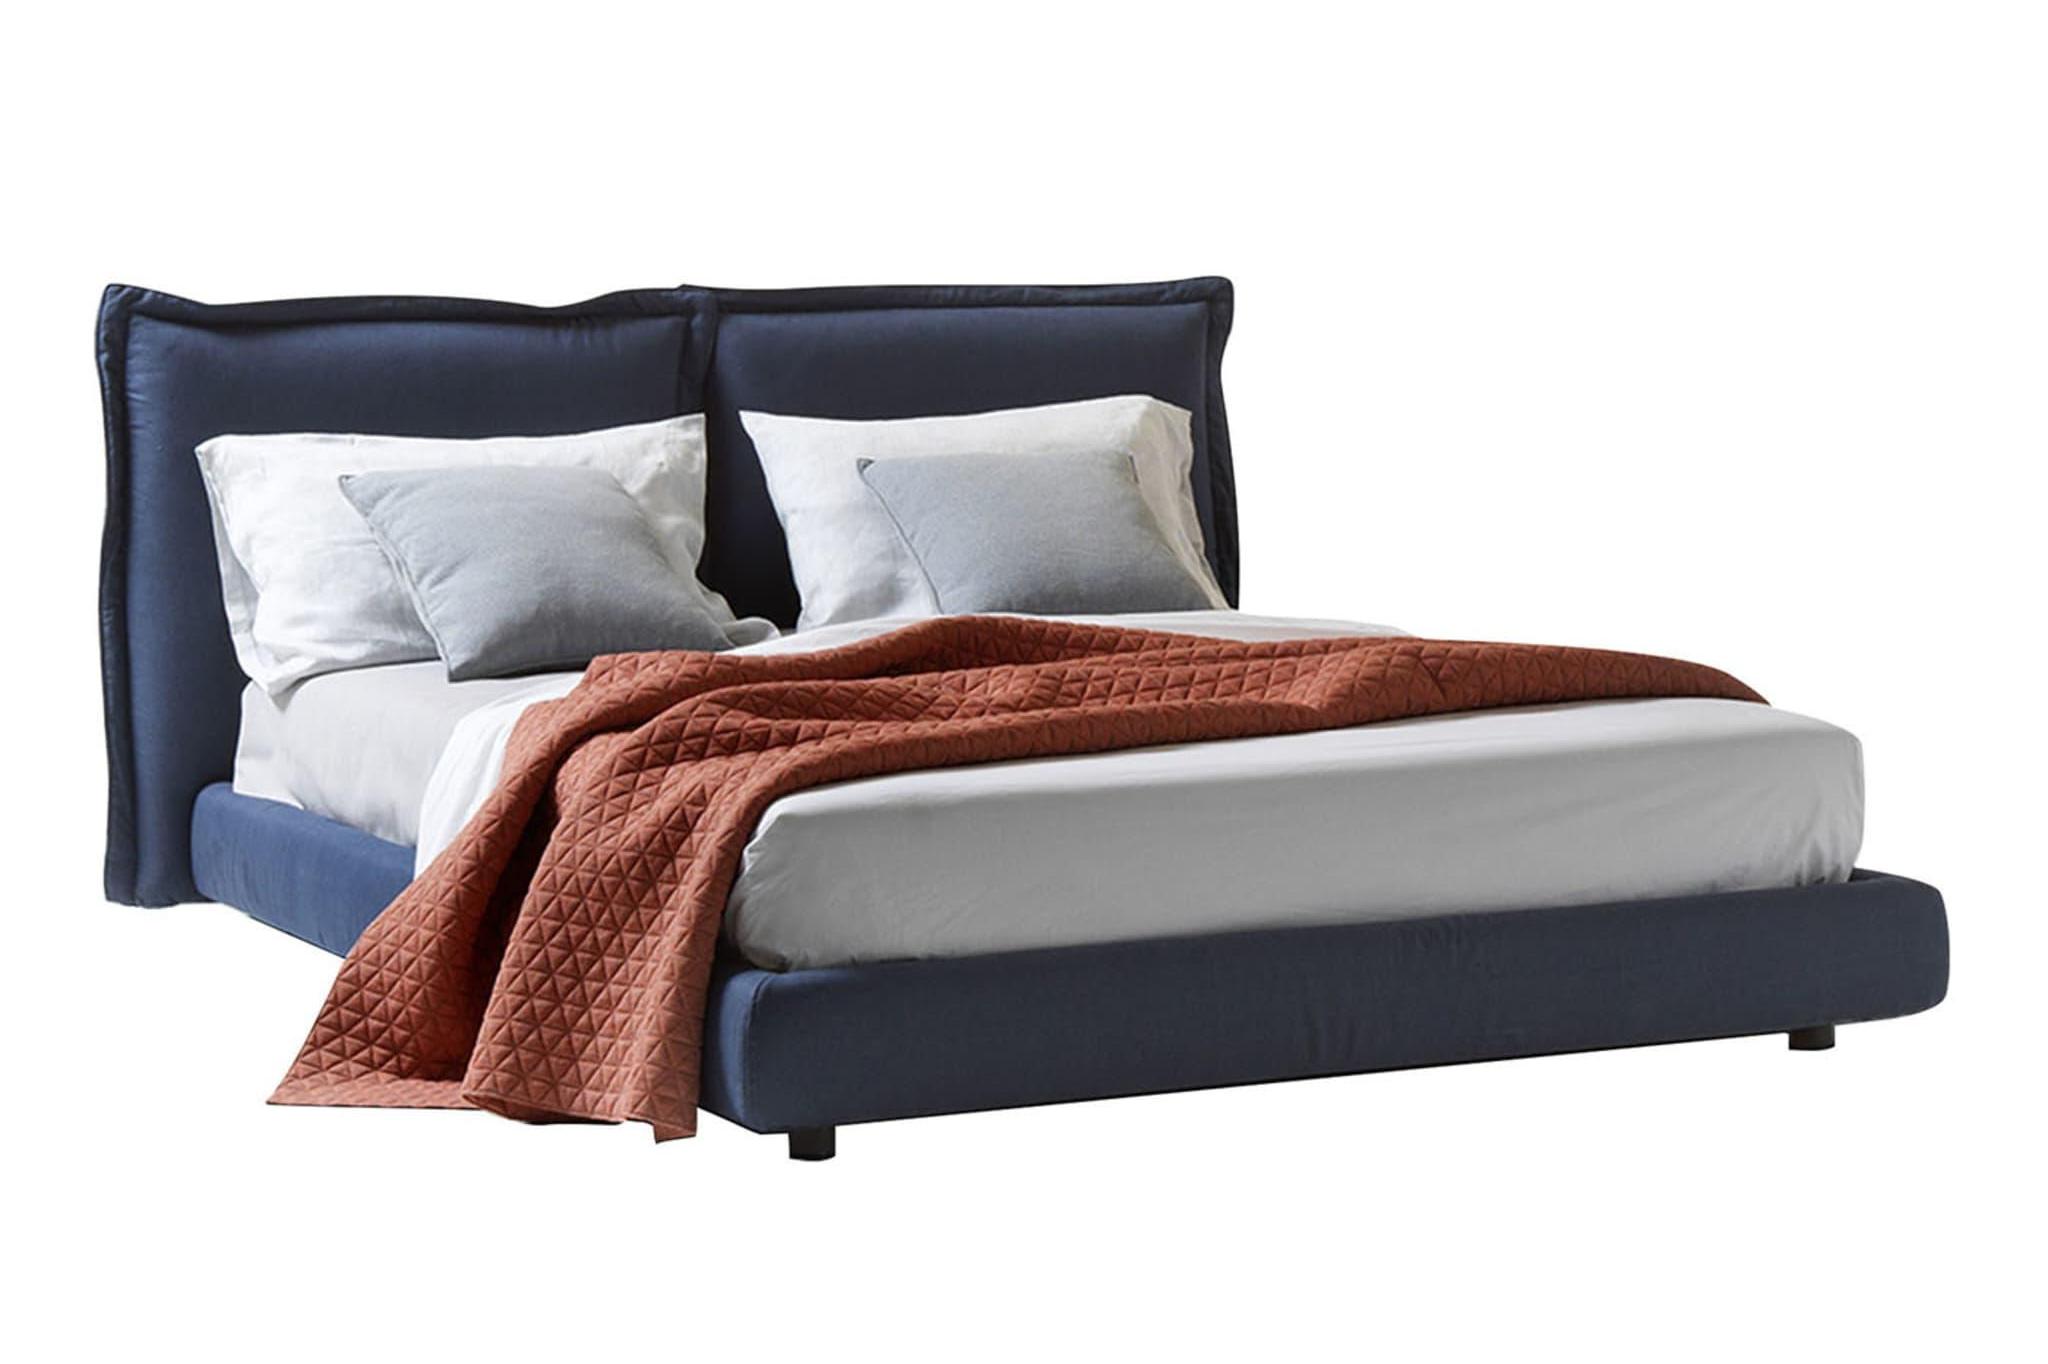 Sleepway Italian Comfort Bed